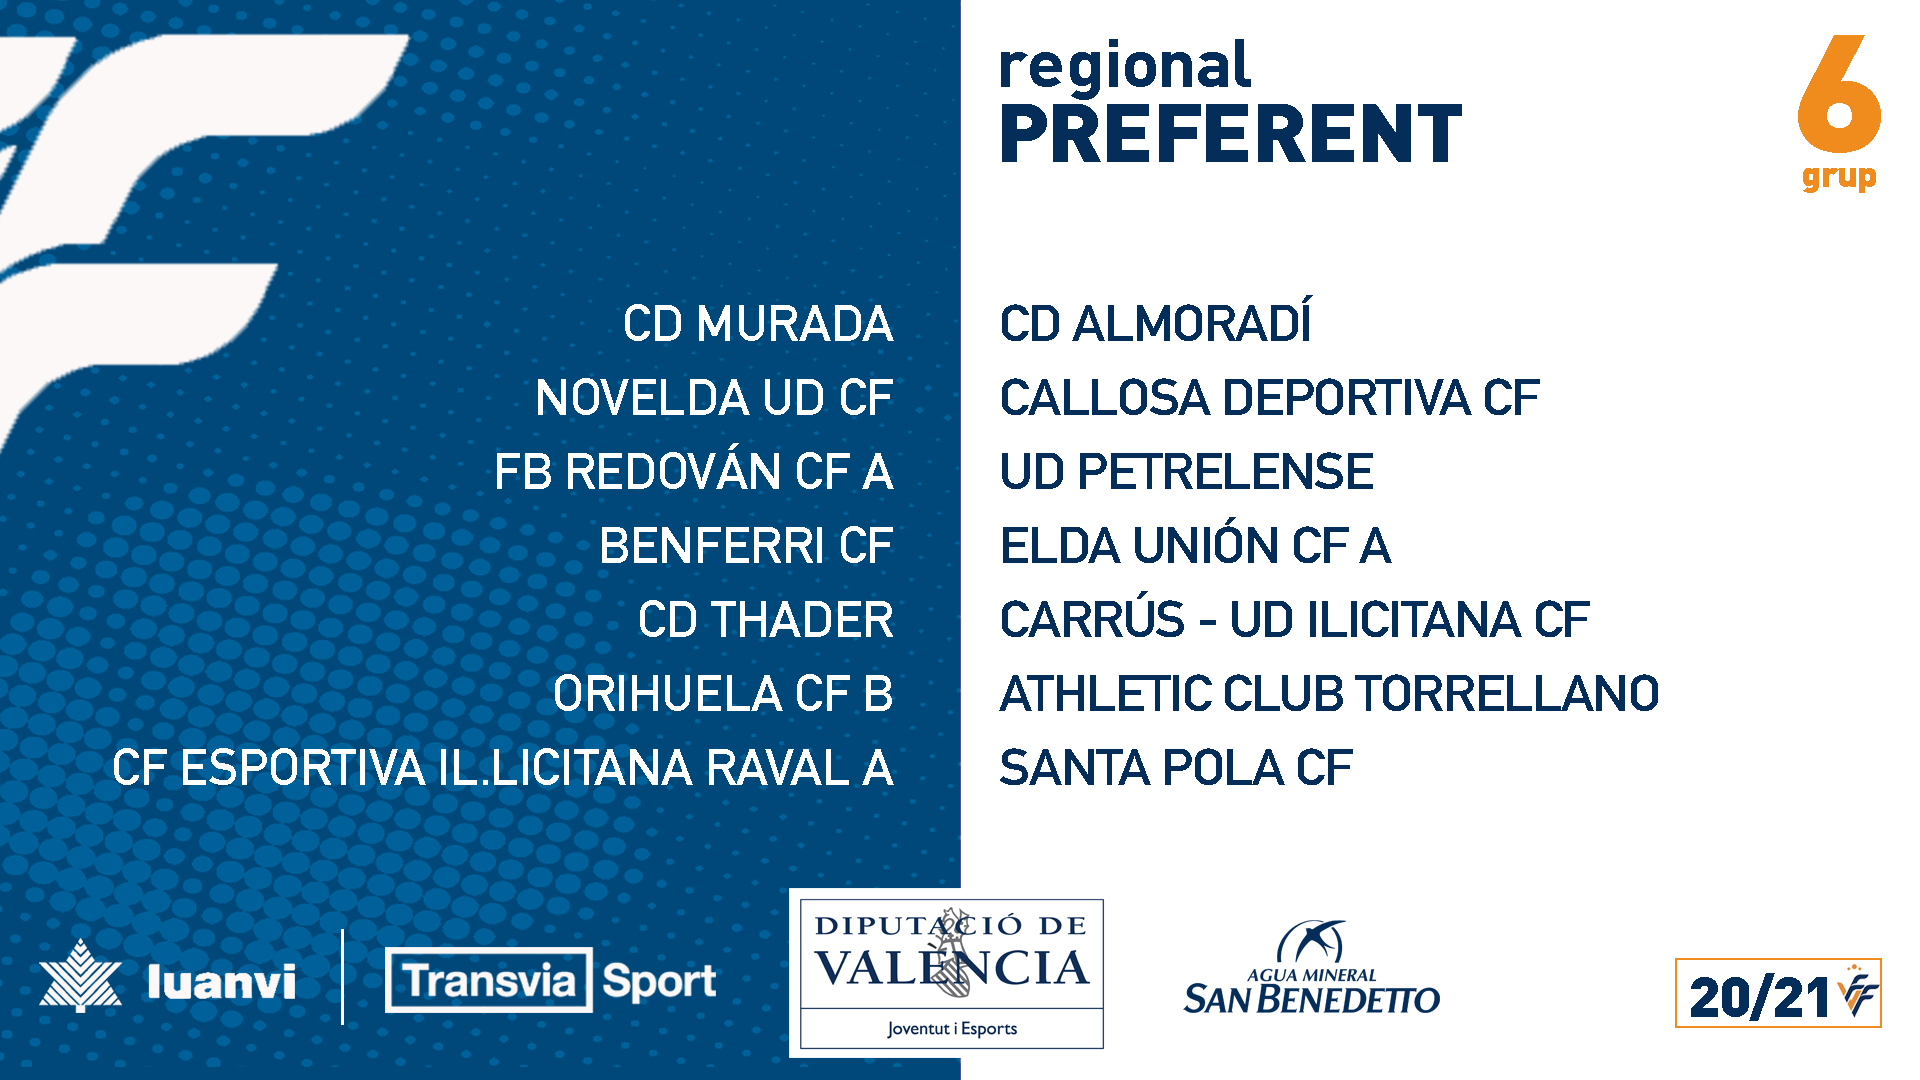 Regional preferente Grupo VI Temporada 2020/21